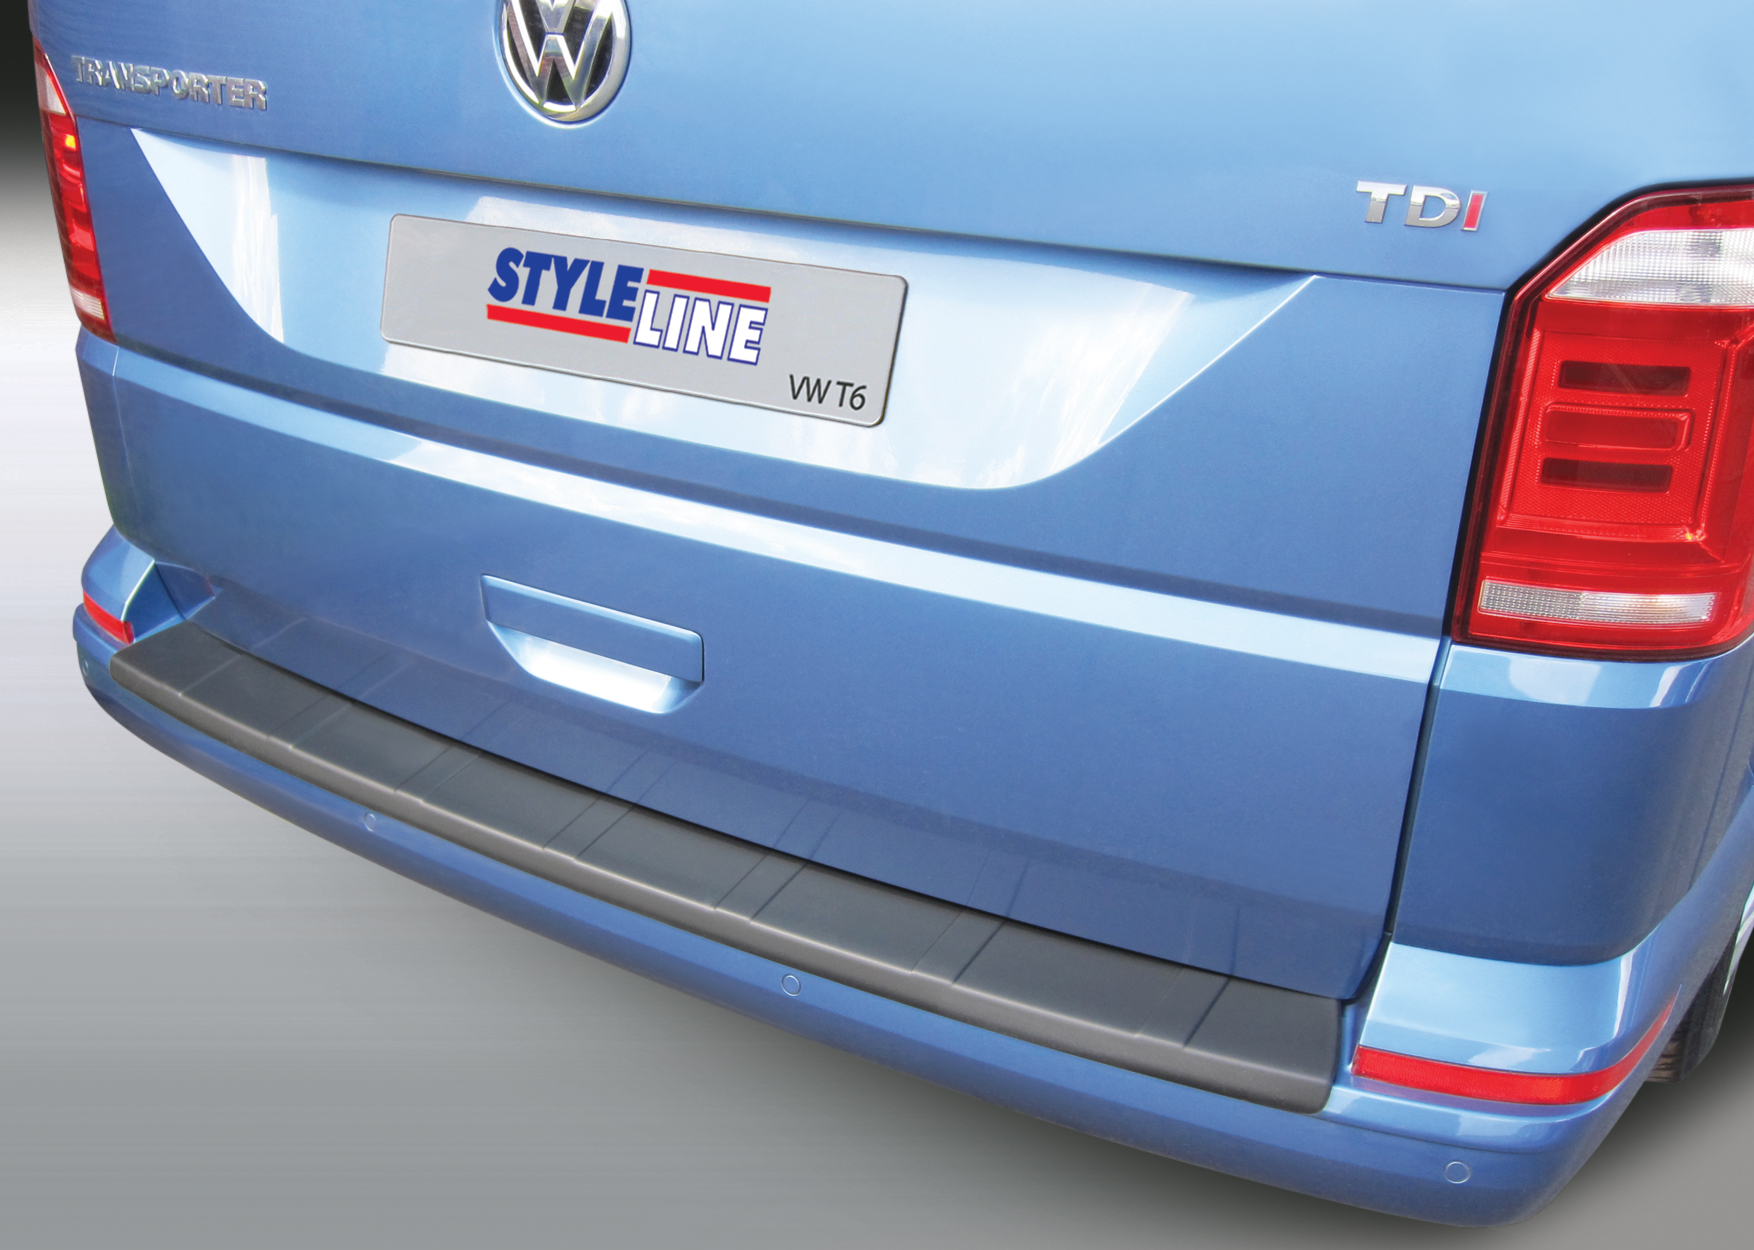 Ladekantenschutz für VW T6 - Schutz für die Ladekante Ihres Fahrzeuges